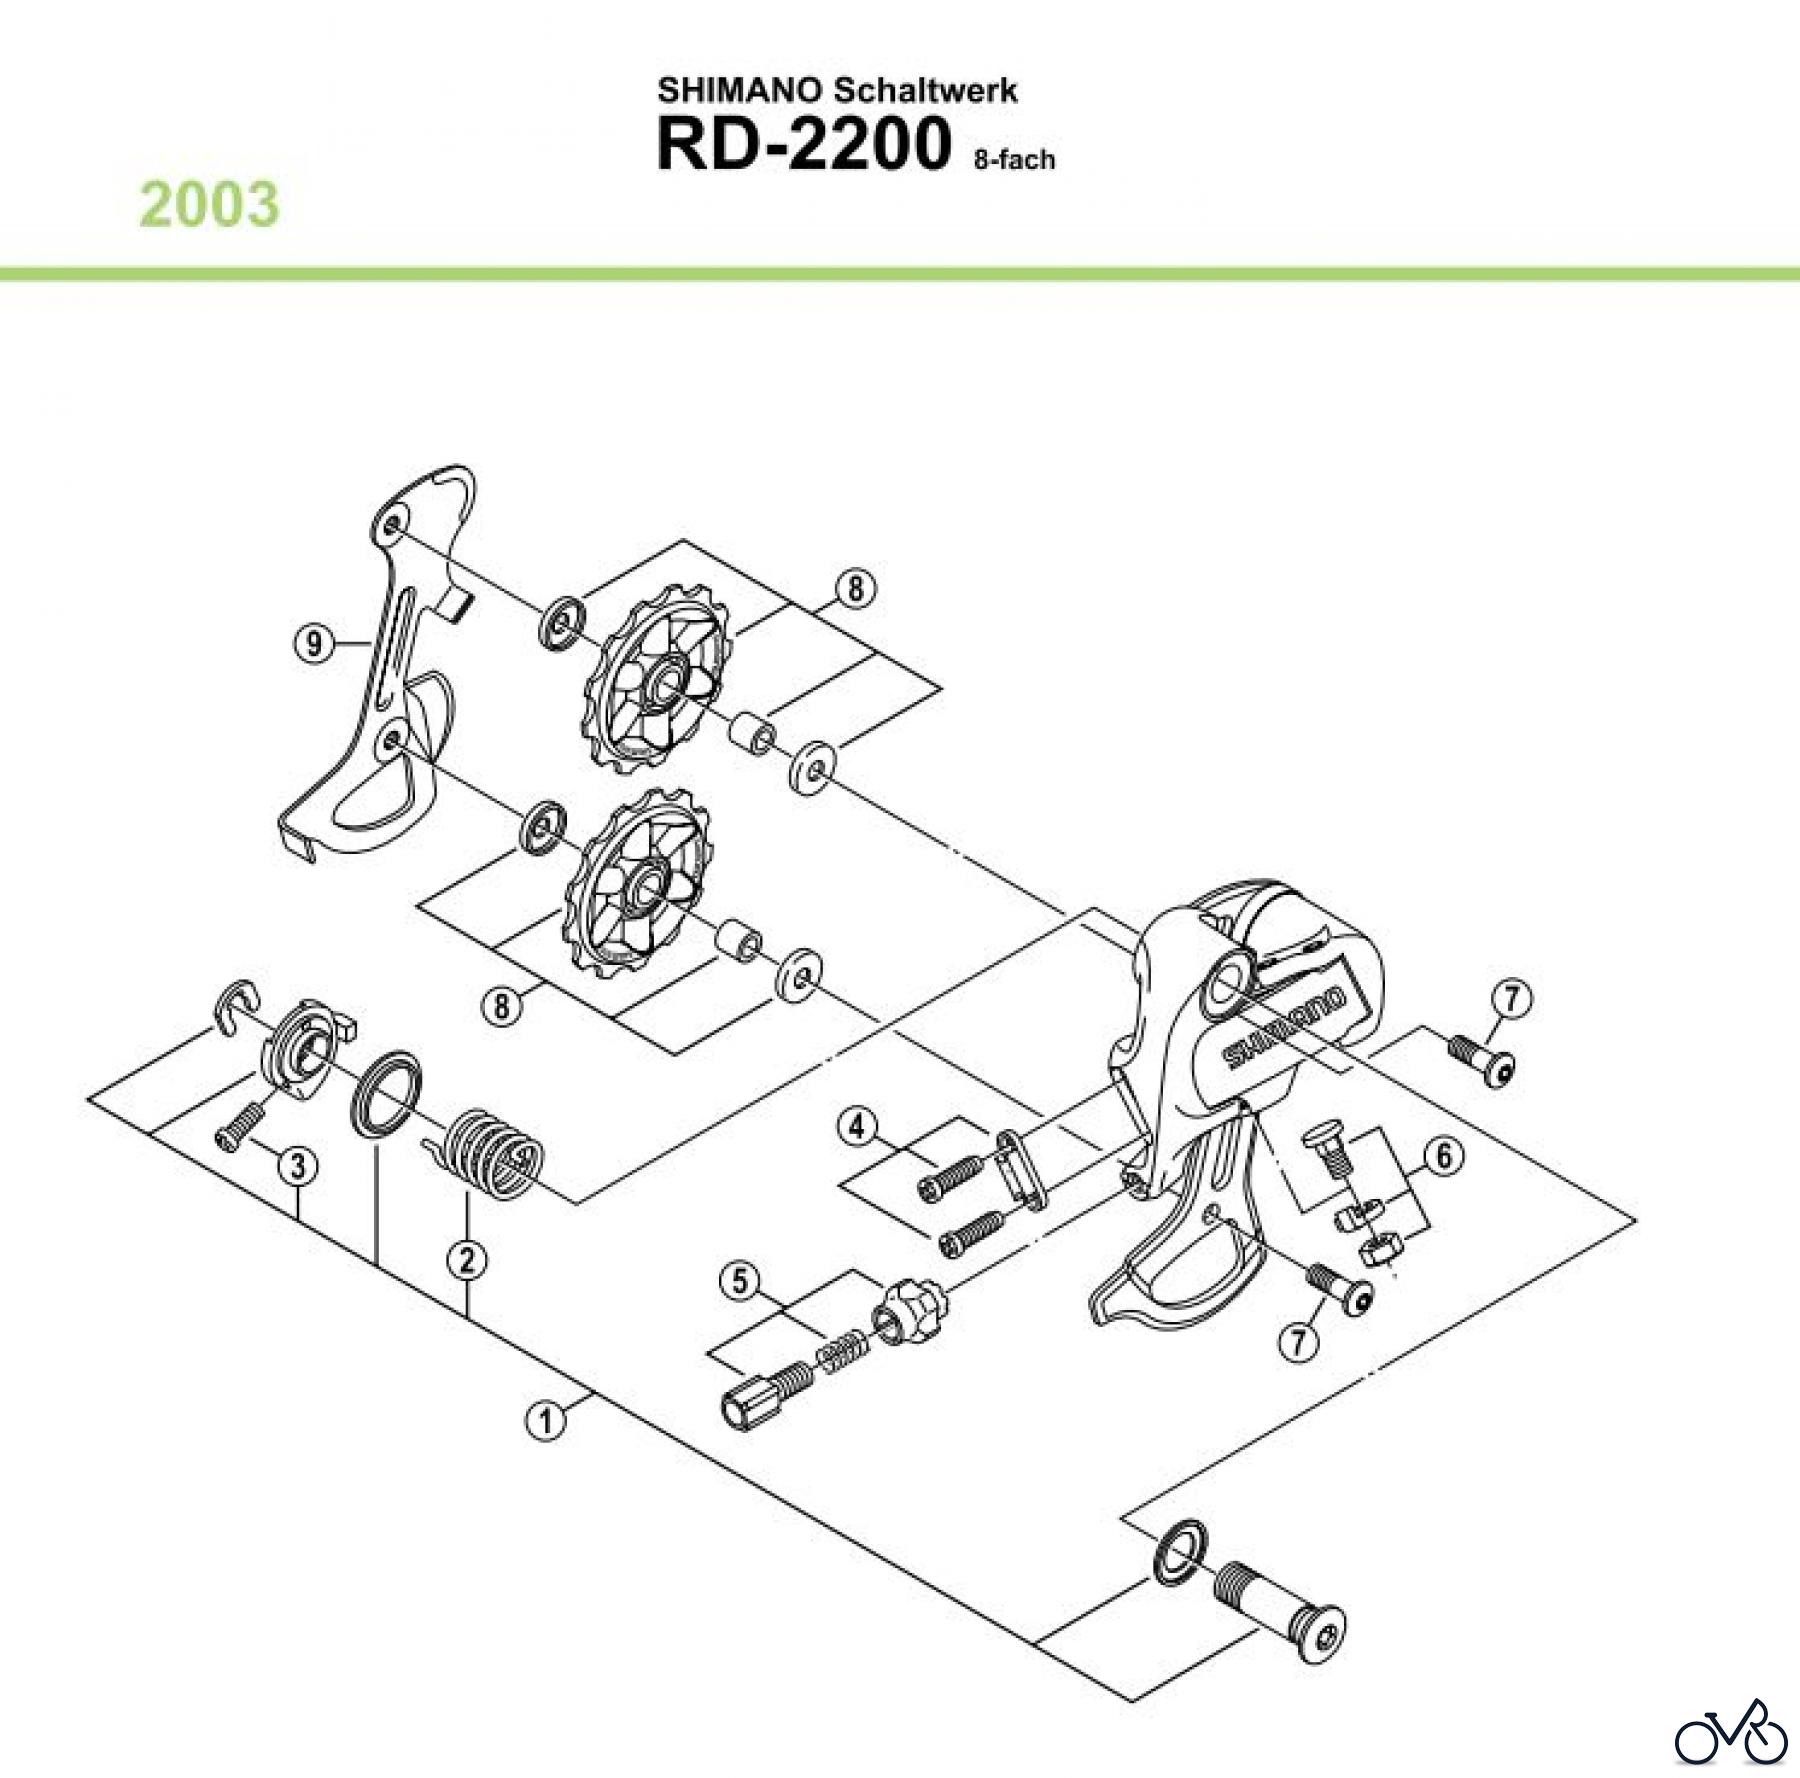  Shimano RD Rear Derailleur - Schaltwerk RD-2200-03